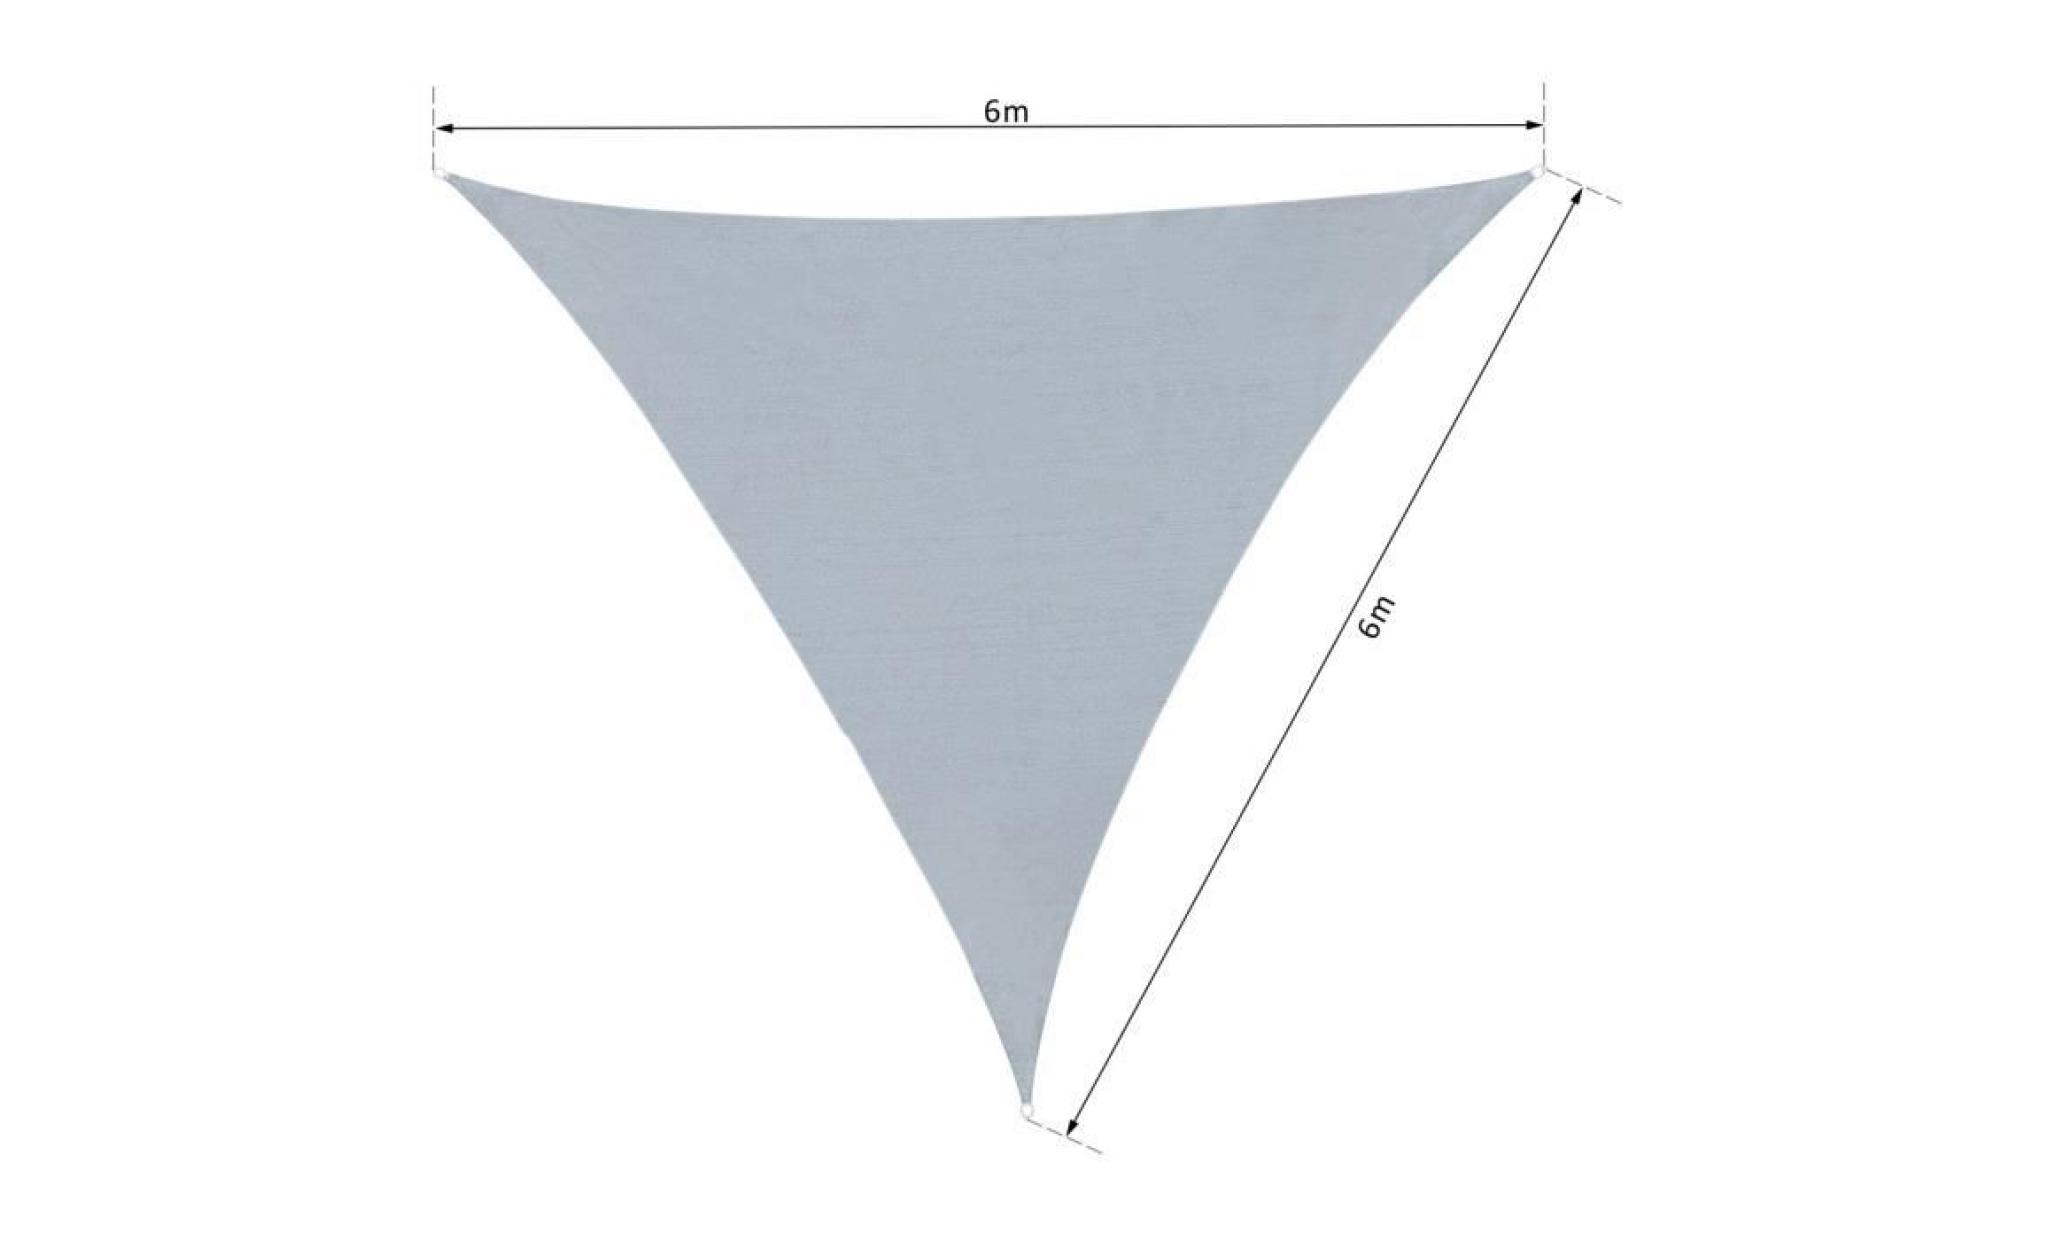 voile d'ombrage triangulaire grande taille 6 x 6 x 6 m polyester imperméabilisé haute densité 160 g/m² gris clair 600x600x1cm gris pas cher